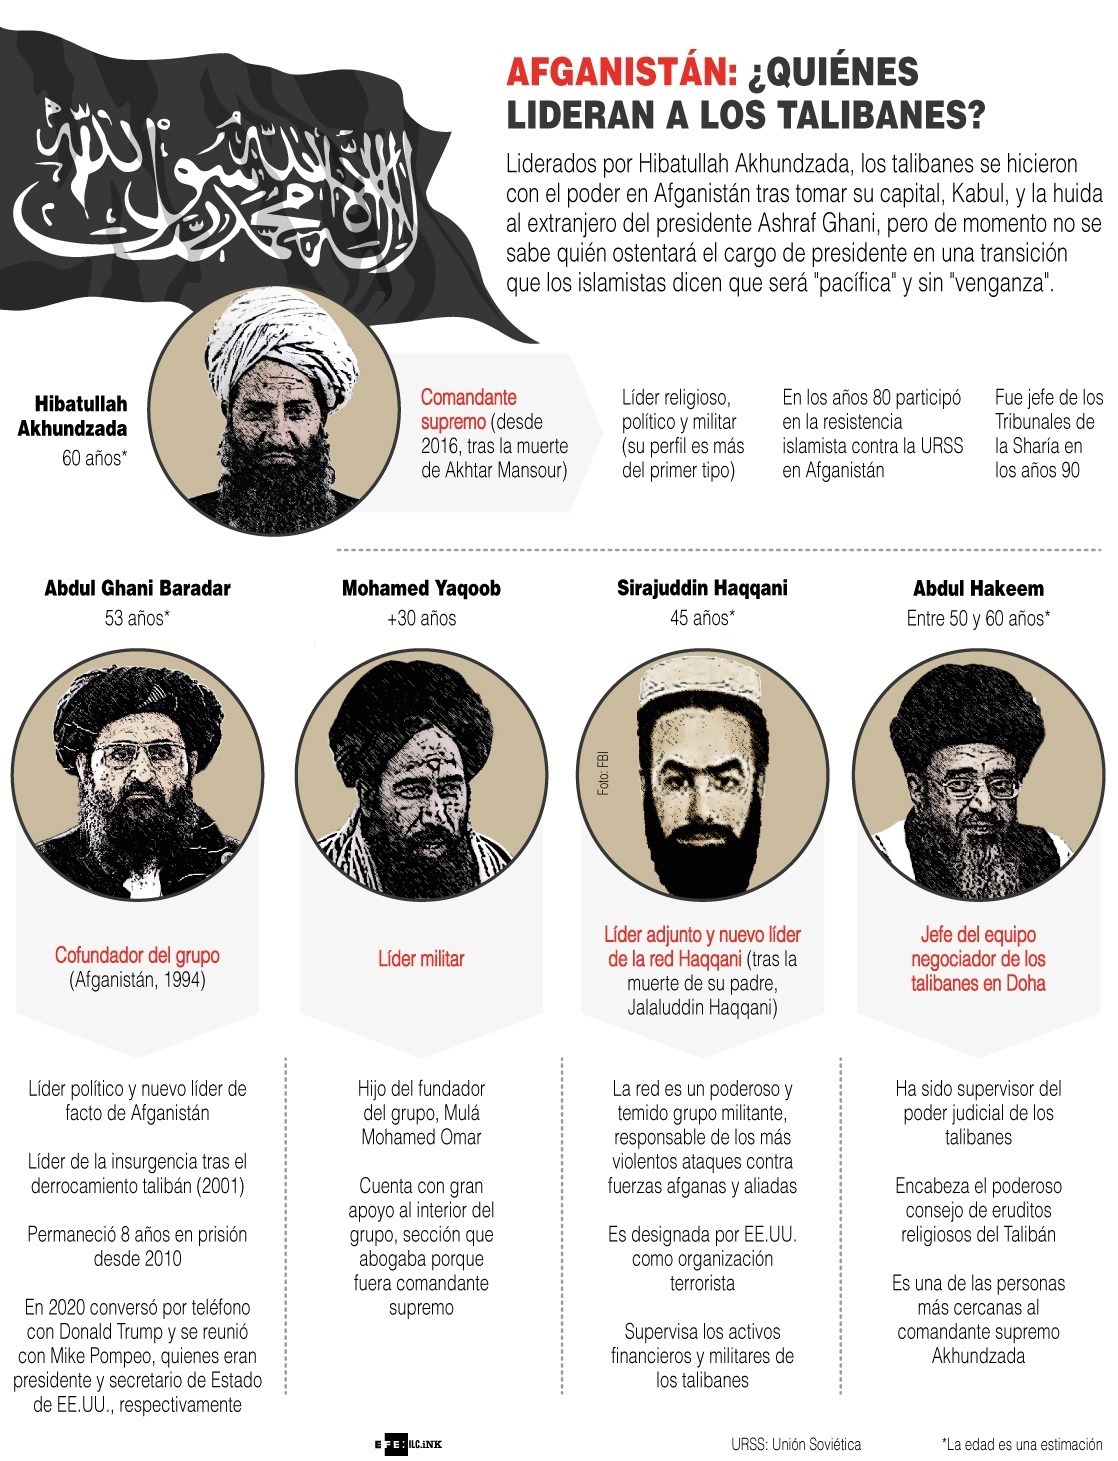 ¿Quiénes lideran a los talibanes?